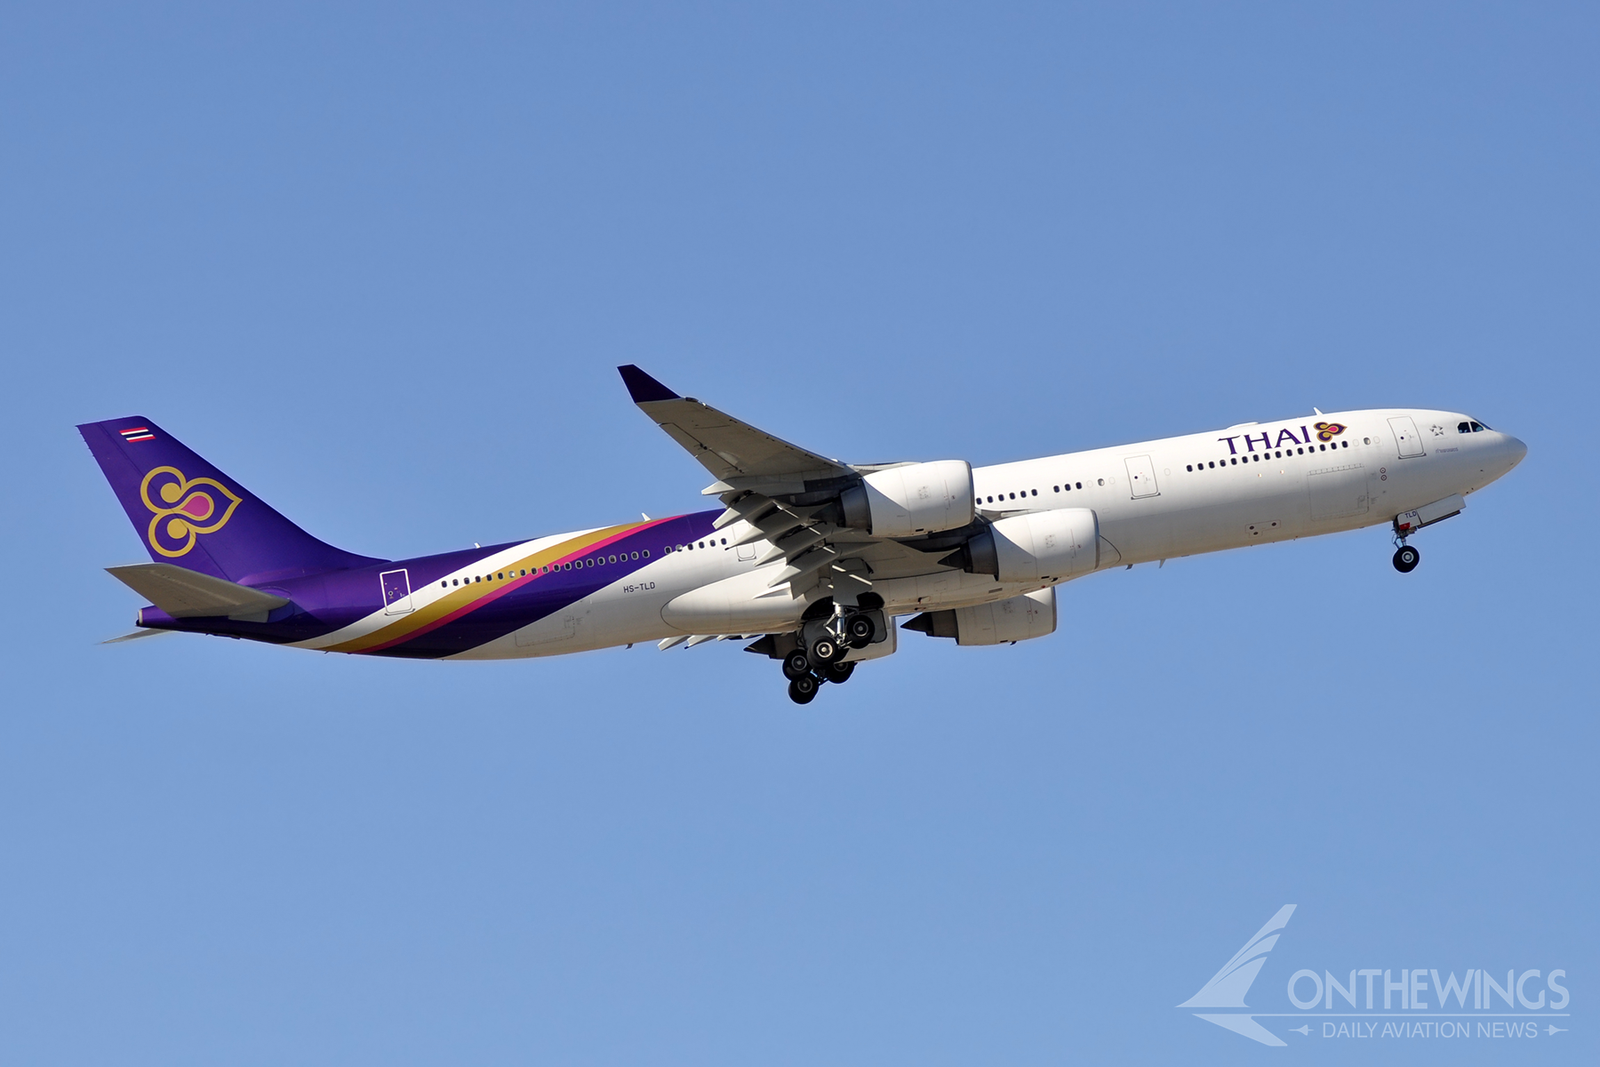 Thai Airways operó solo 4 unidades del A340-500, una versión de largo alcance del A340 con una configuración de solo 215 plazas.